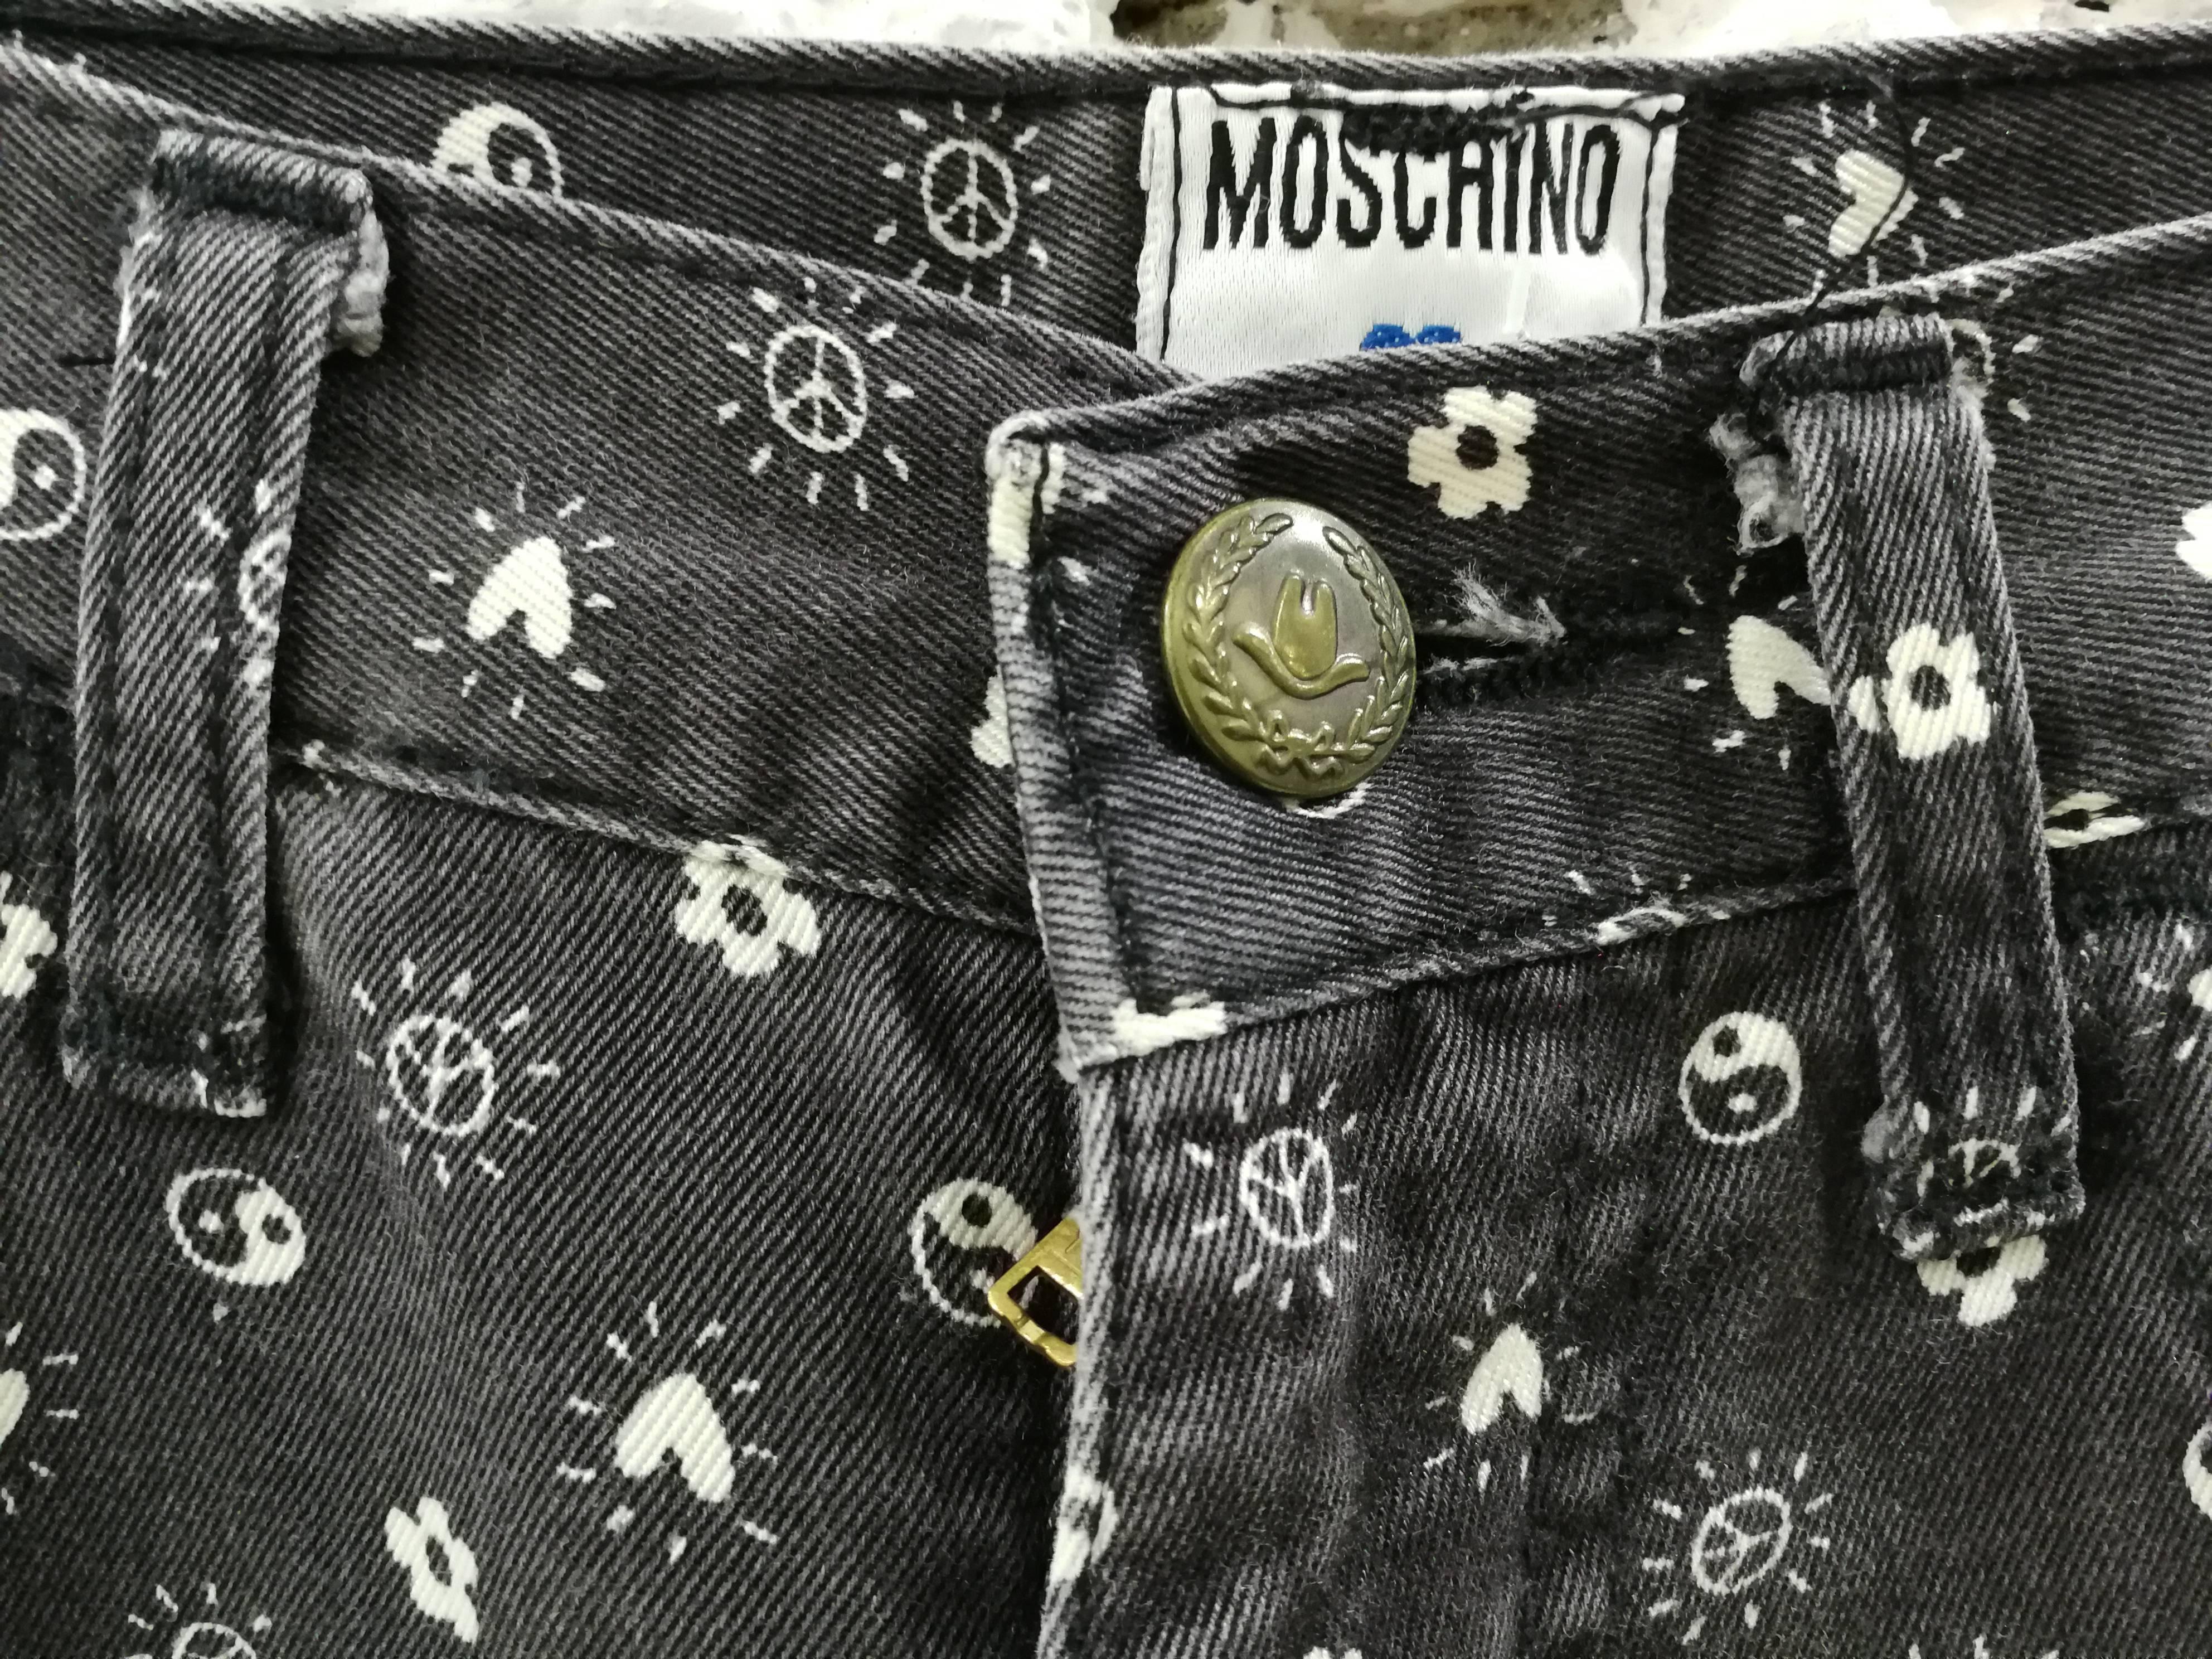 Moschino Jeans grau Hose

Graue Moschino Jeans Frieden und mehr Symbole überall

Völlig in Italien in Denim Größe 27 gemacht

Zusammensetzung: Baumwolle